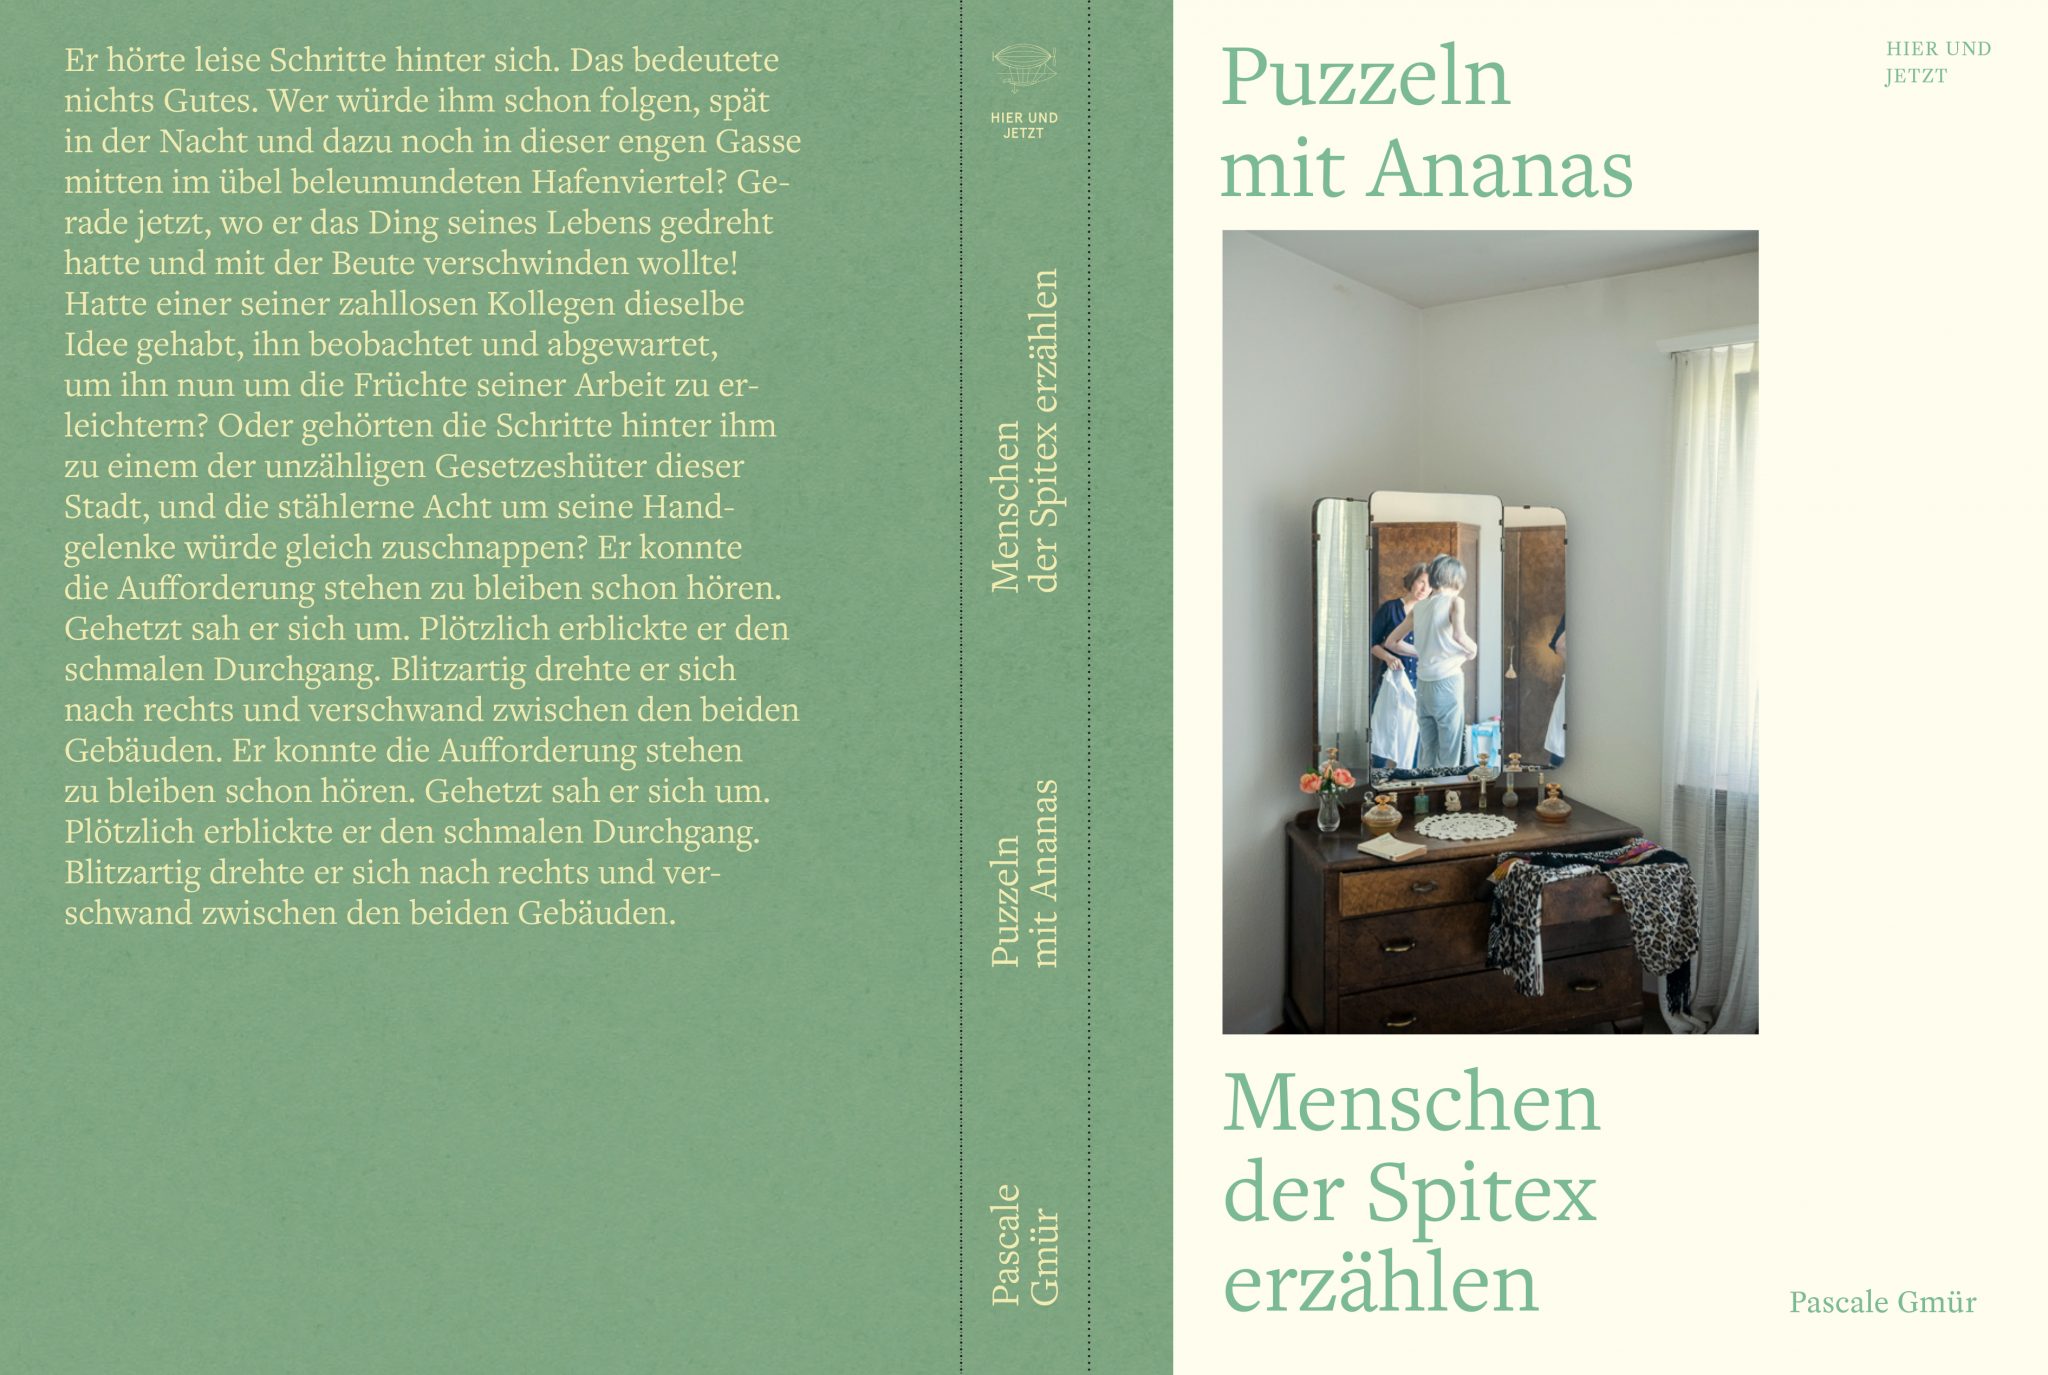 Puzzeln mit Ananas. 2019 Verlag Hier und Jetzt. Autorin Pascale Gmür.